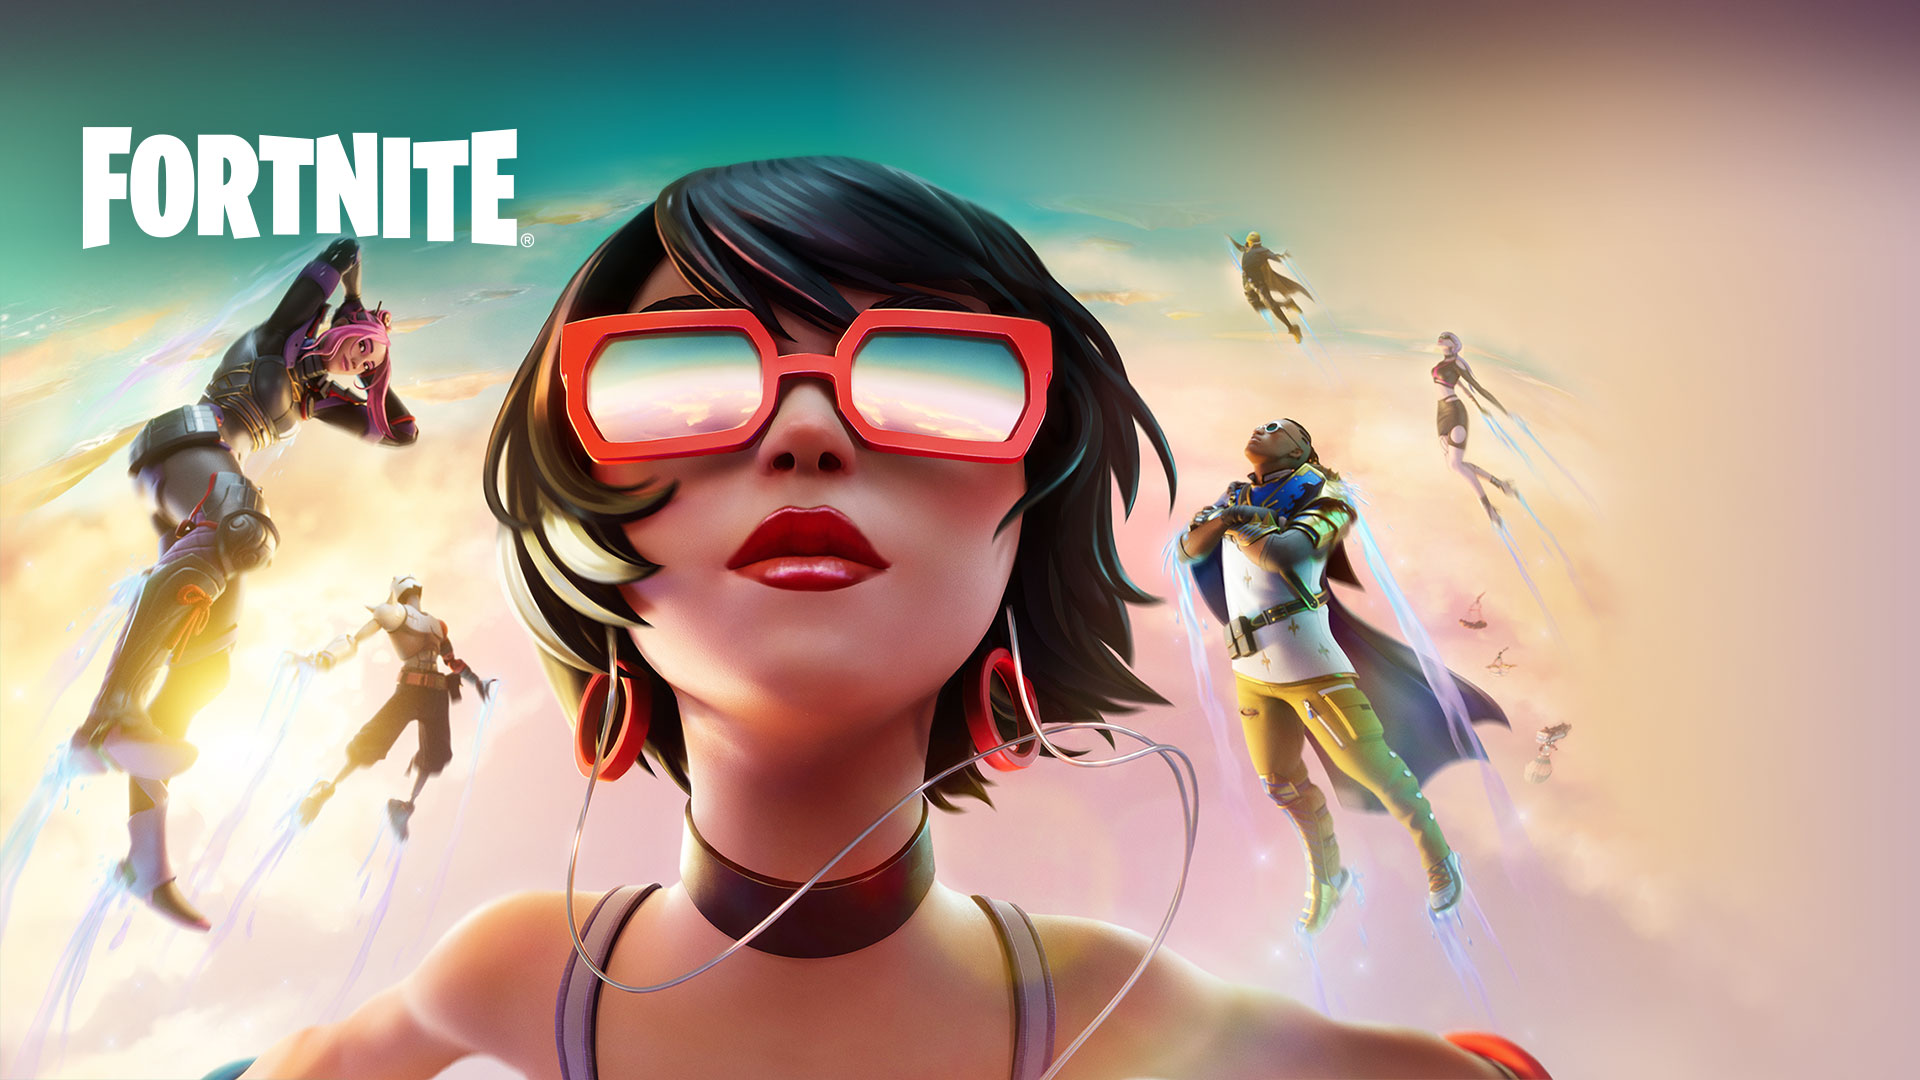 Fortnite, En jente med røde solbriller flyter i skyene med andre karakterer mot en pastellfarget himmel.